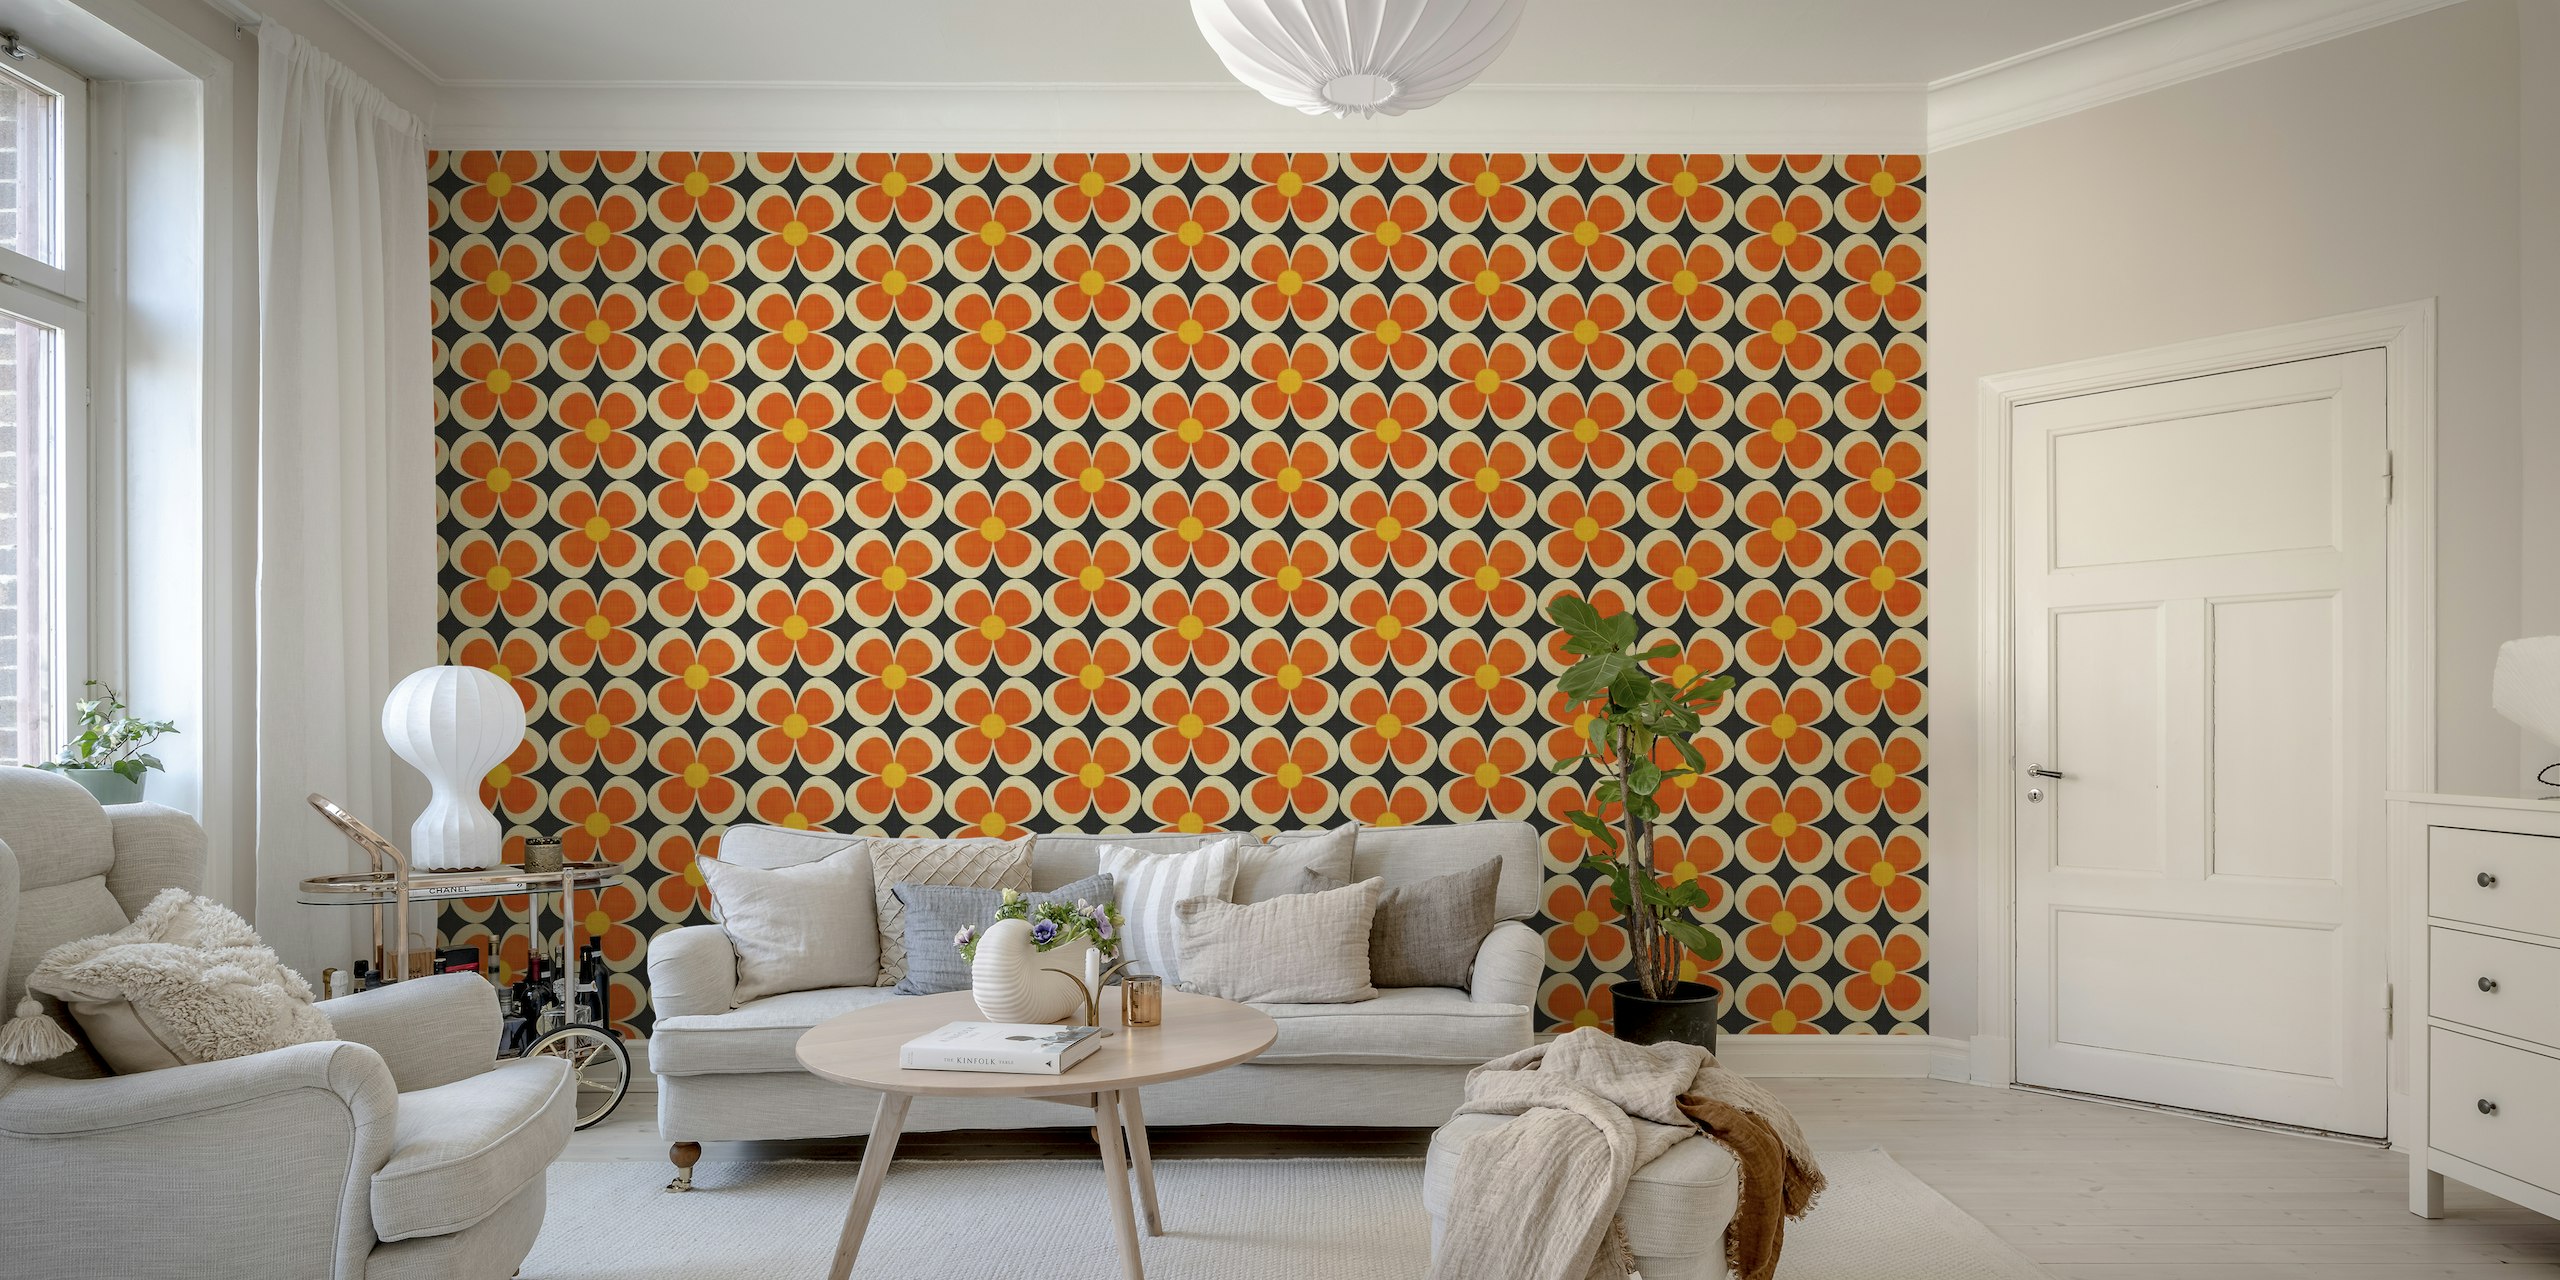 Retro inspiriran groovy geometrijski cvjetni zidni mural u narančastim i smeđim tonovima